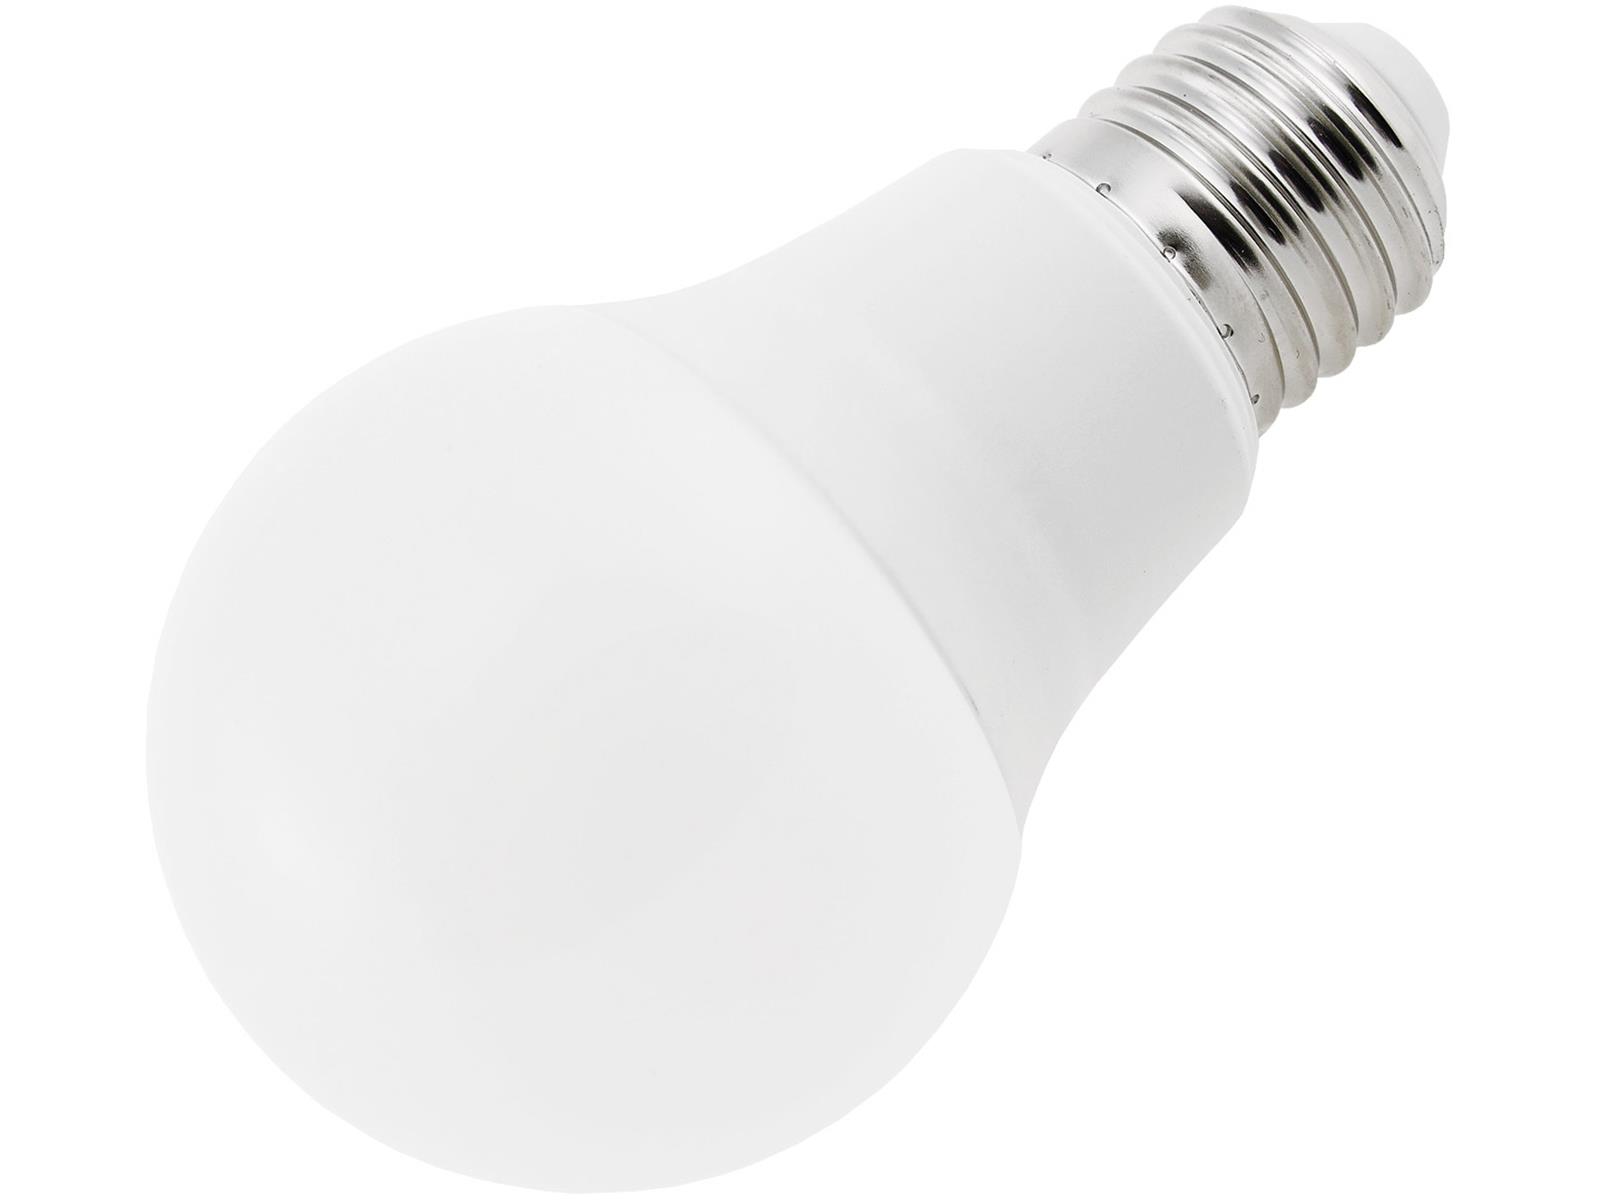 LED Glühlampe E27 "G80 Promo" 10er-Pack2800k, 800lm, 230V/9W, 160°, warmweiß